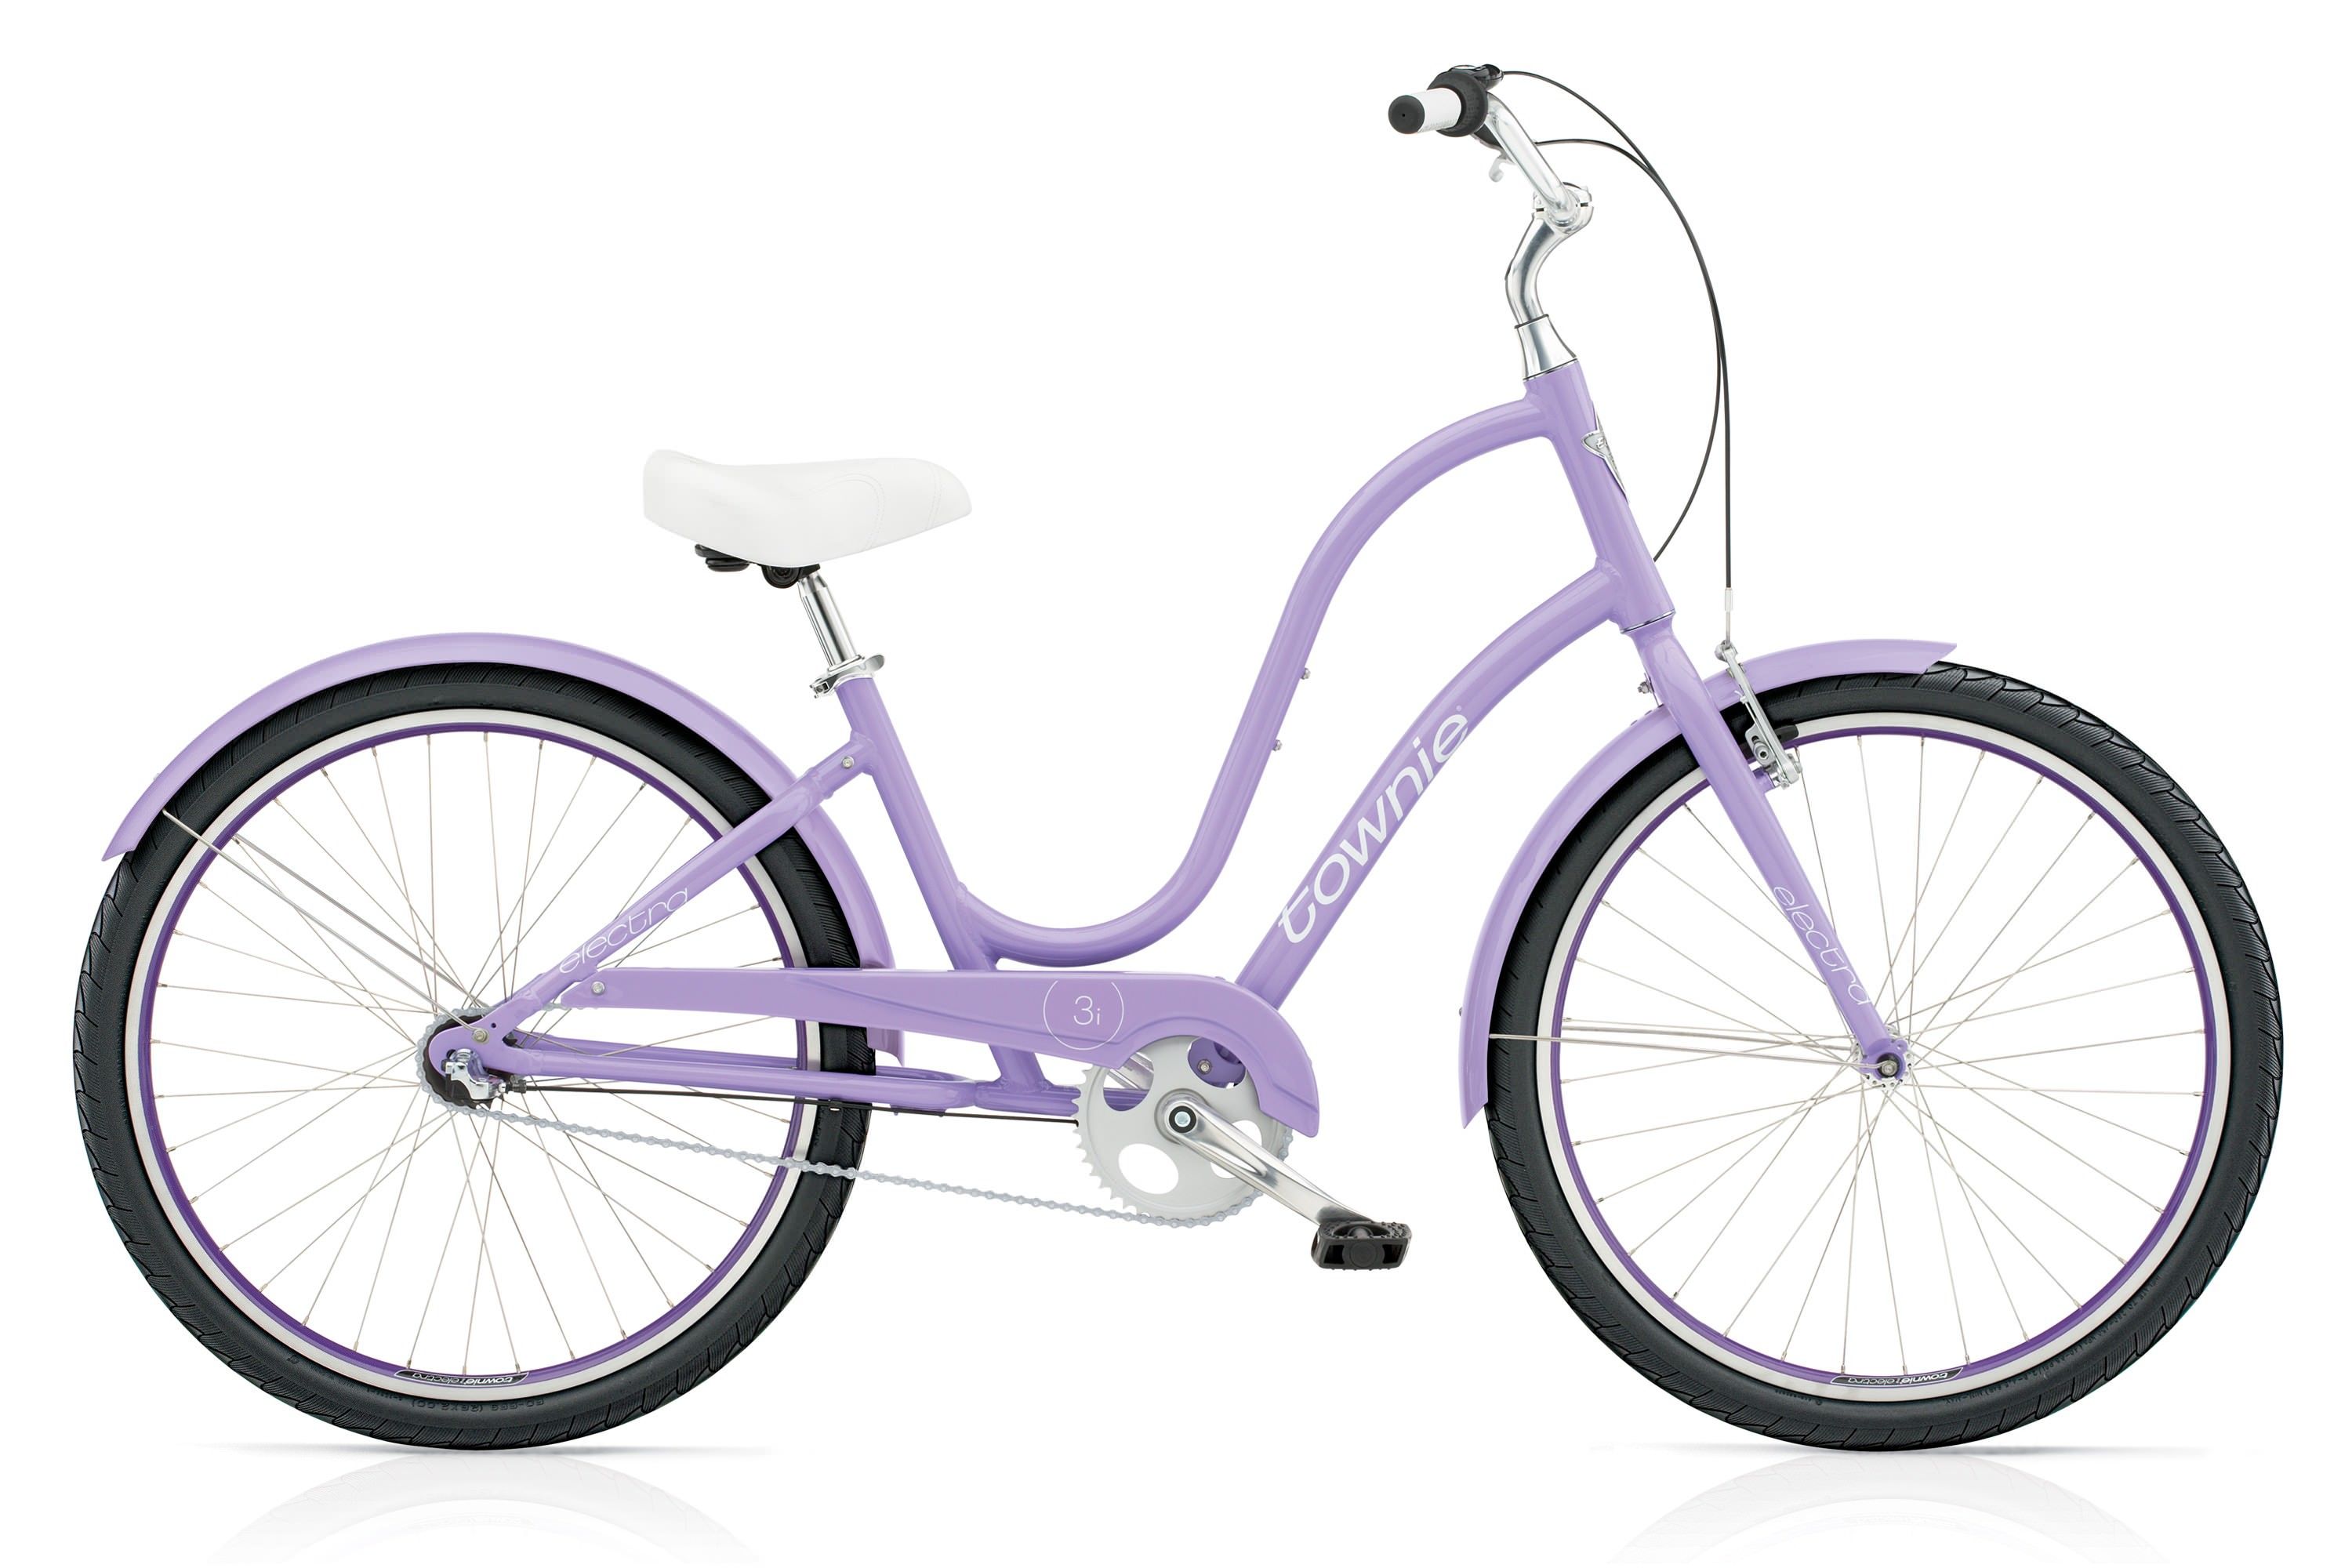  Велосипед Electra Townie Original 3i Ladies 2017